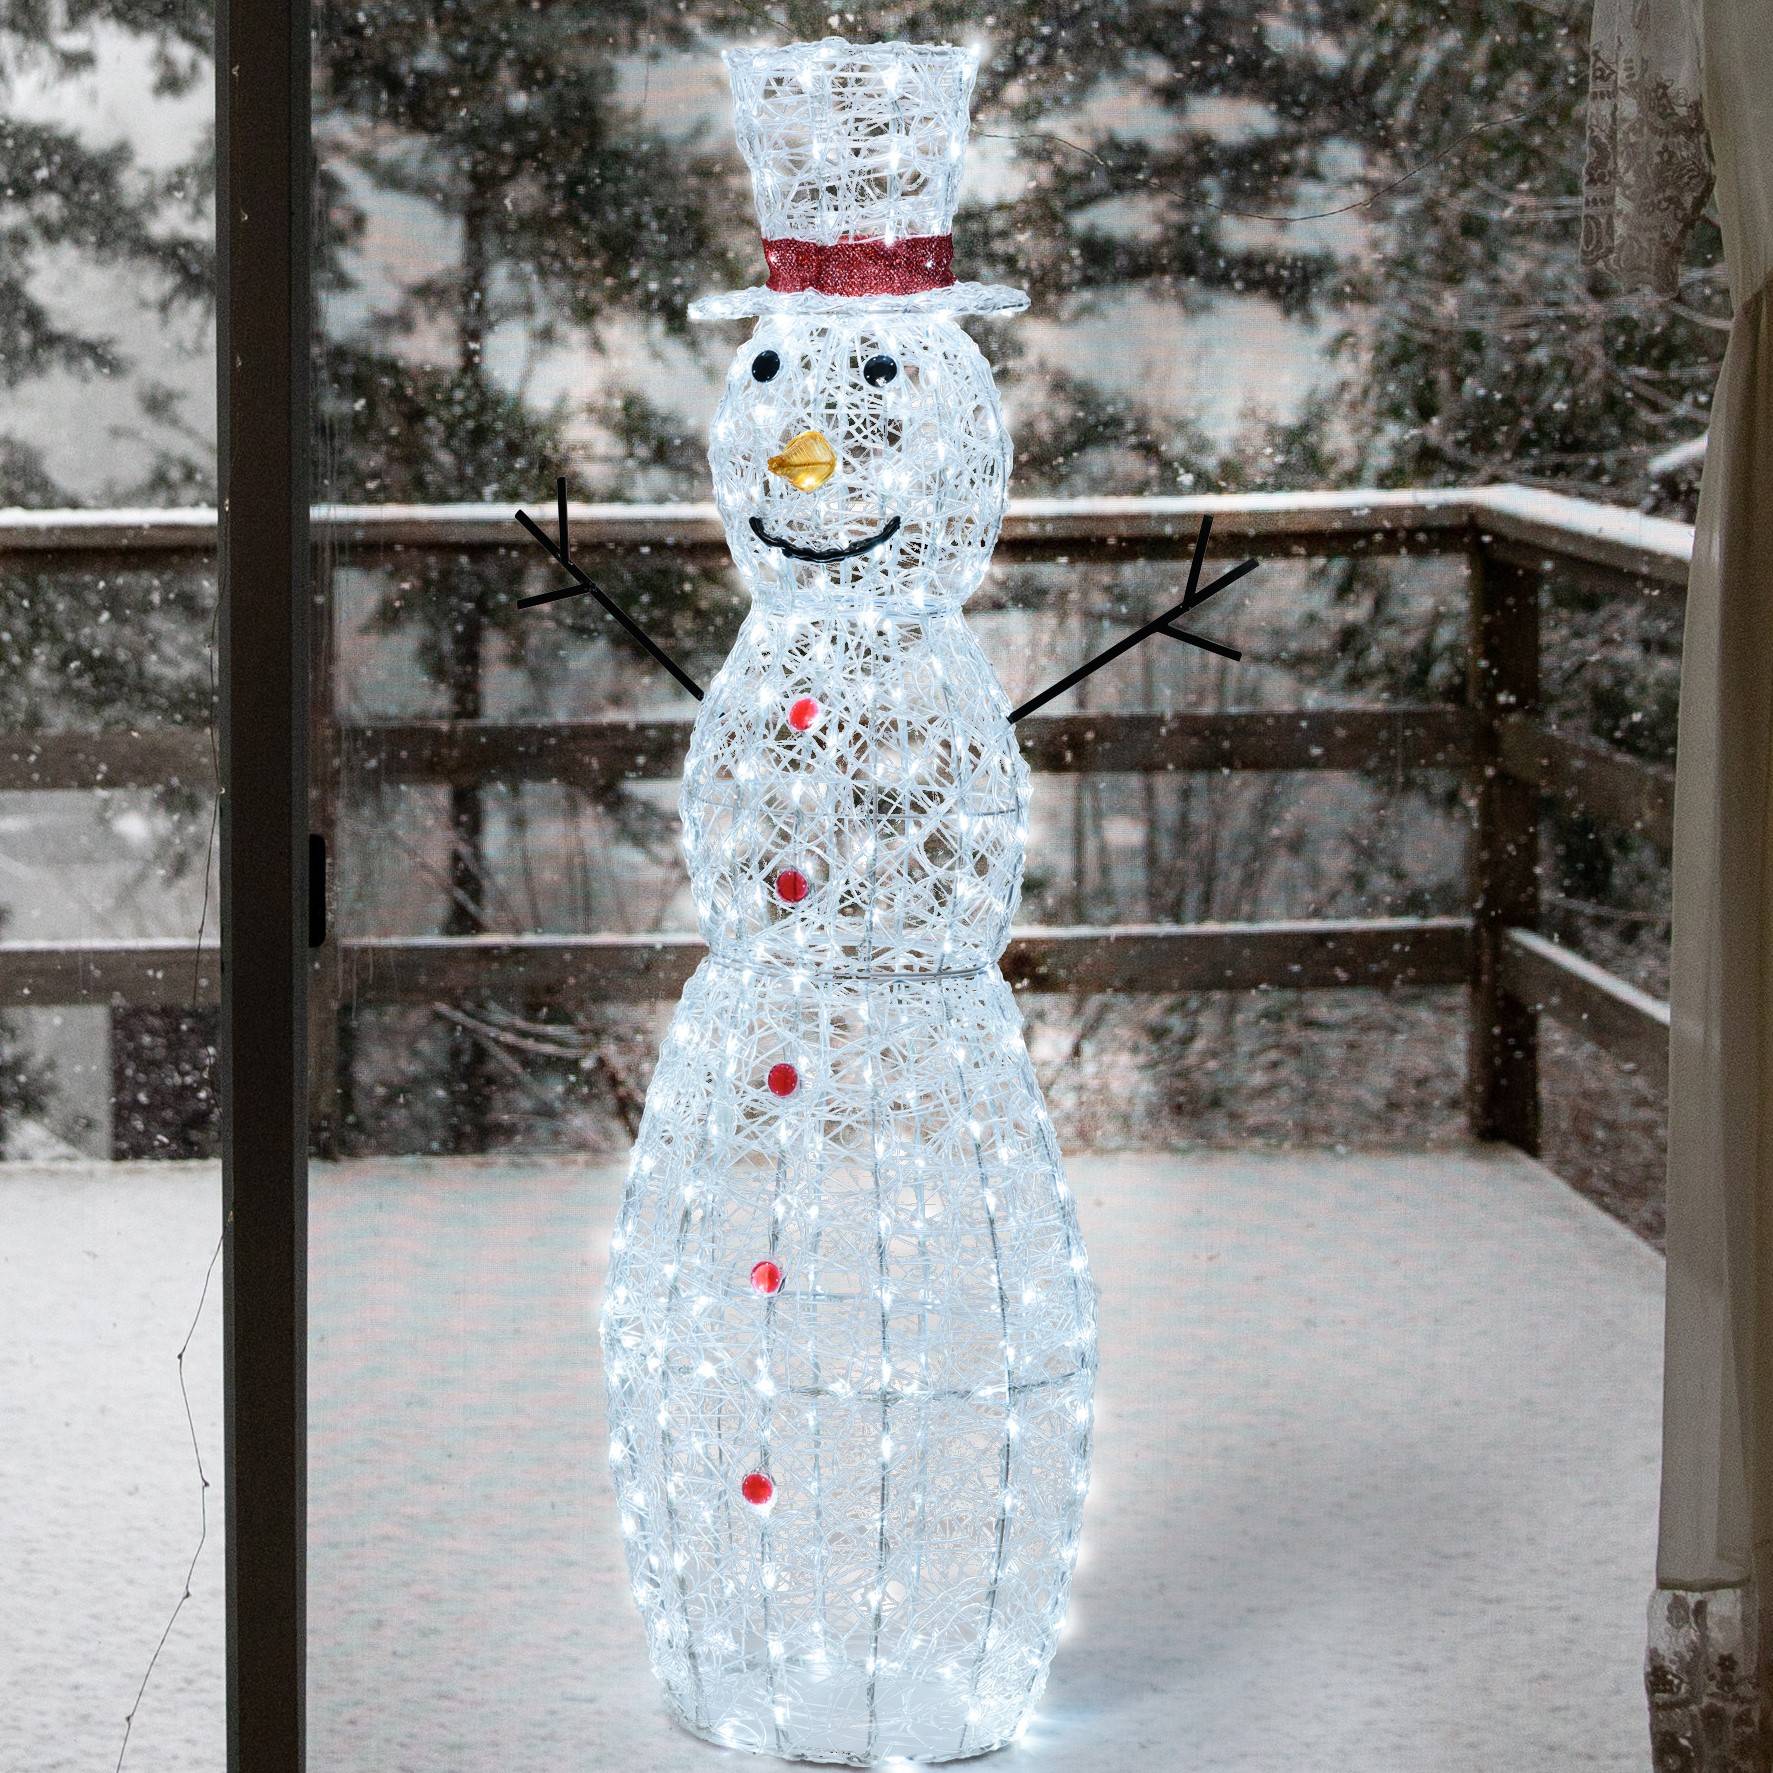 Décoration LED bonhomme de neige lumineux 30cm